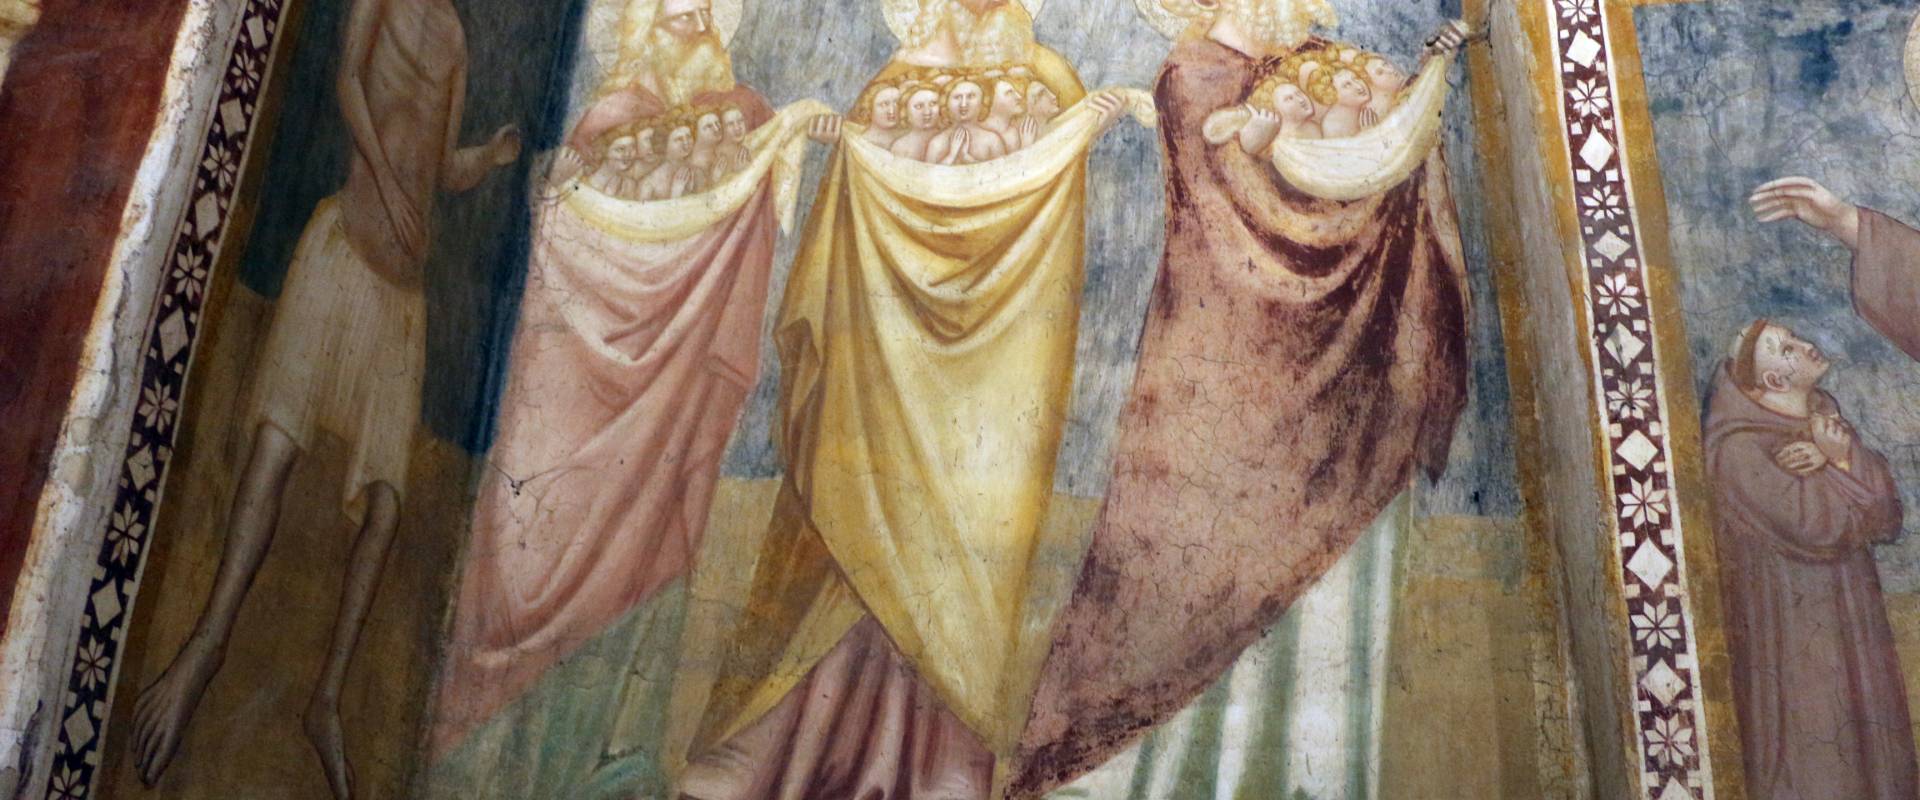 Scuola bolognese, ciclo dell'abbazia di pomposa, 1350 ca., giudizio universale, patriarchi in paradiso 01 foto di Sailko